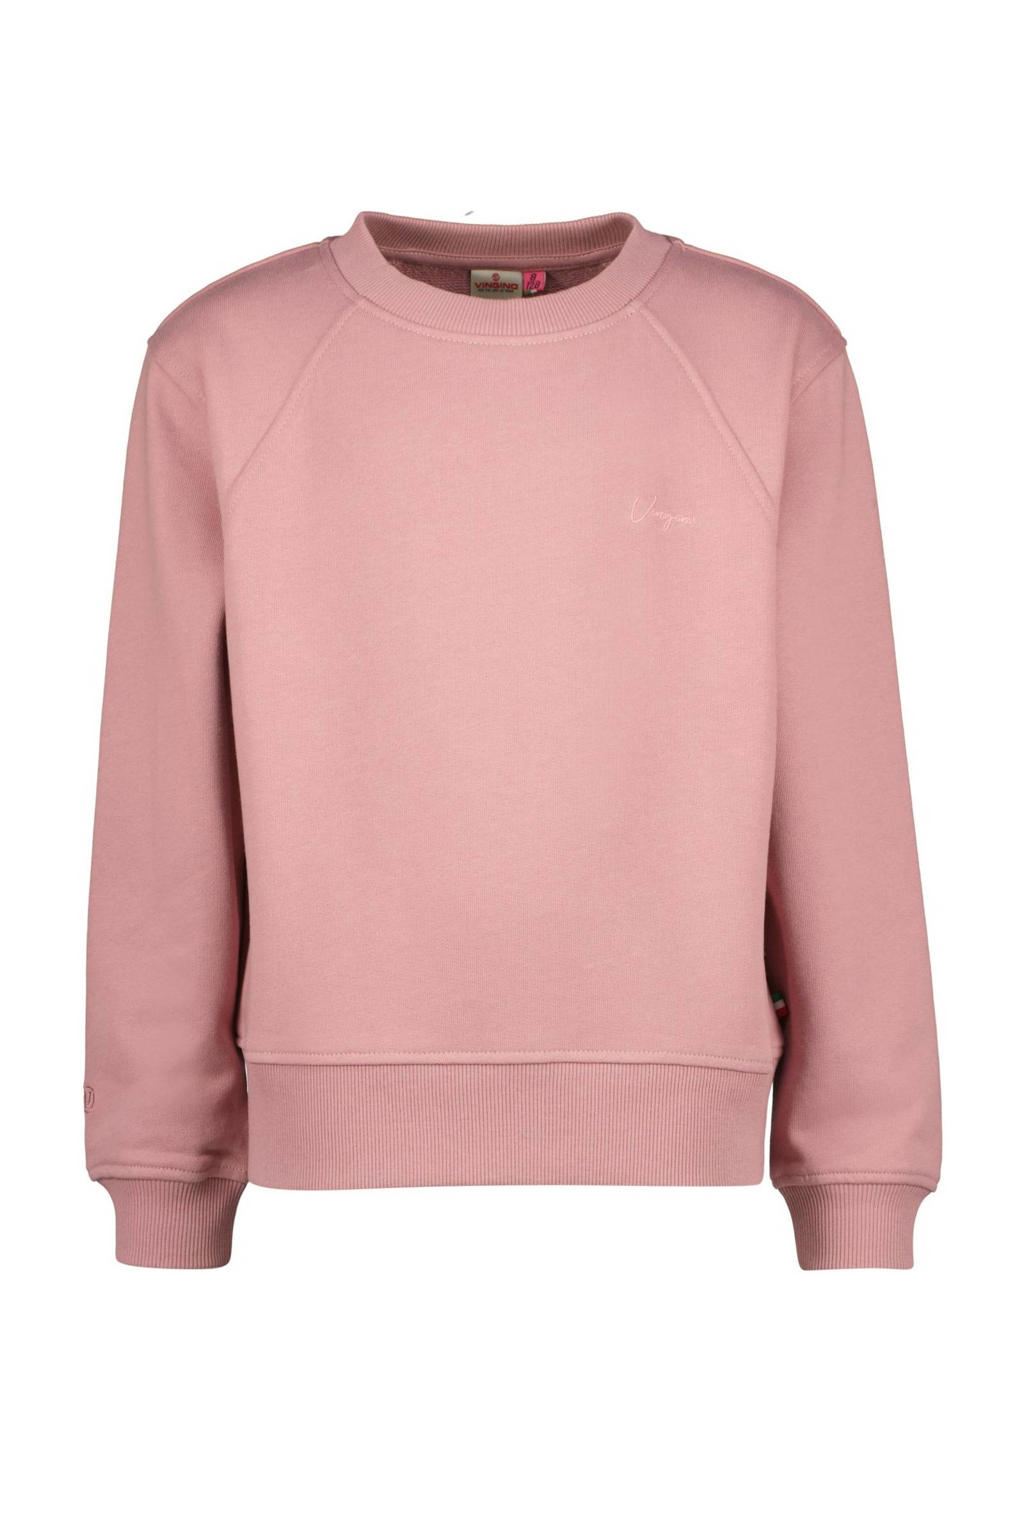 Roze meisjes Vingino sweater met lange mouwen en ronde hals